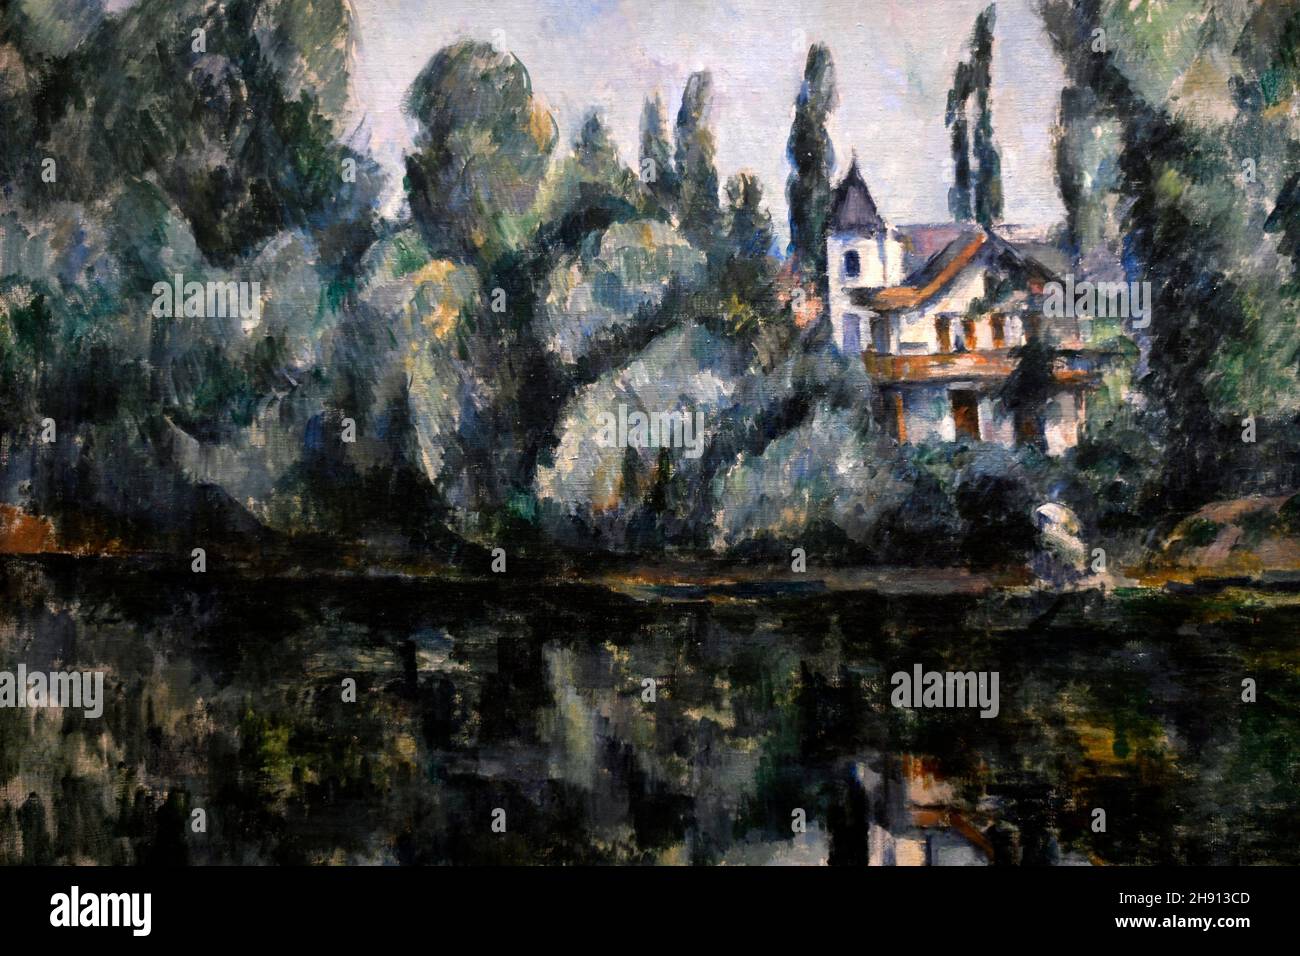 Ufer der Marne, 1888-1890, Paul Cezanne, Ermitage Museum, St. Petersbourg, Russland, Ausgestellt in der Ausstellung Ikonen der modernen Kunst Stockfoto